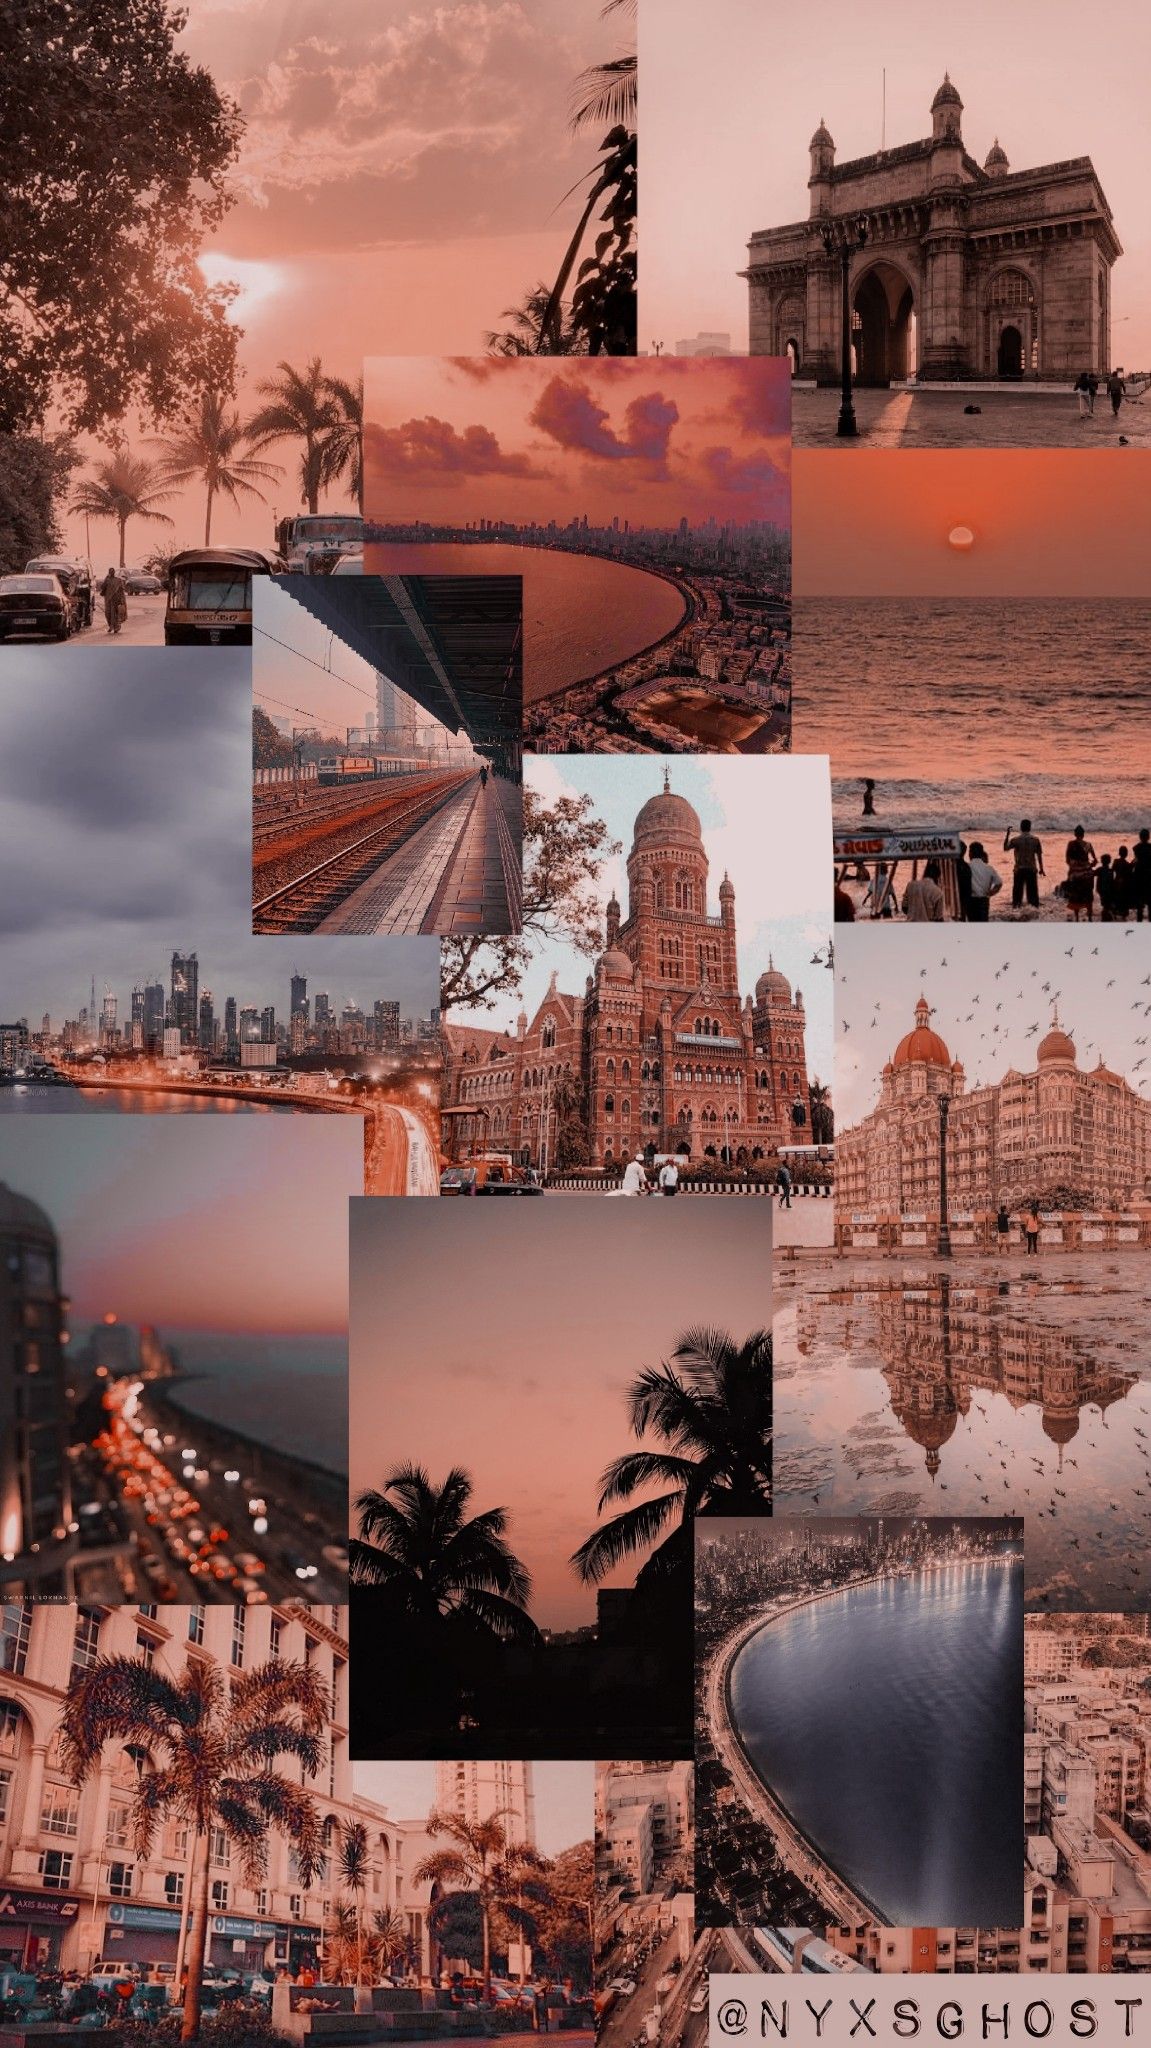 Mumbai Aesthetic Wallpaper. City aesthetic, Aesthetic wallpaper, College wallpaper